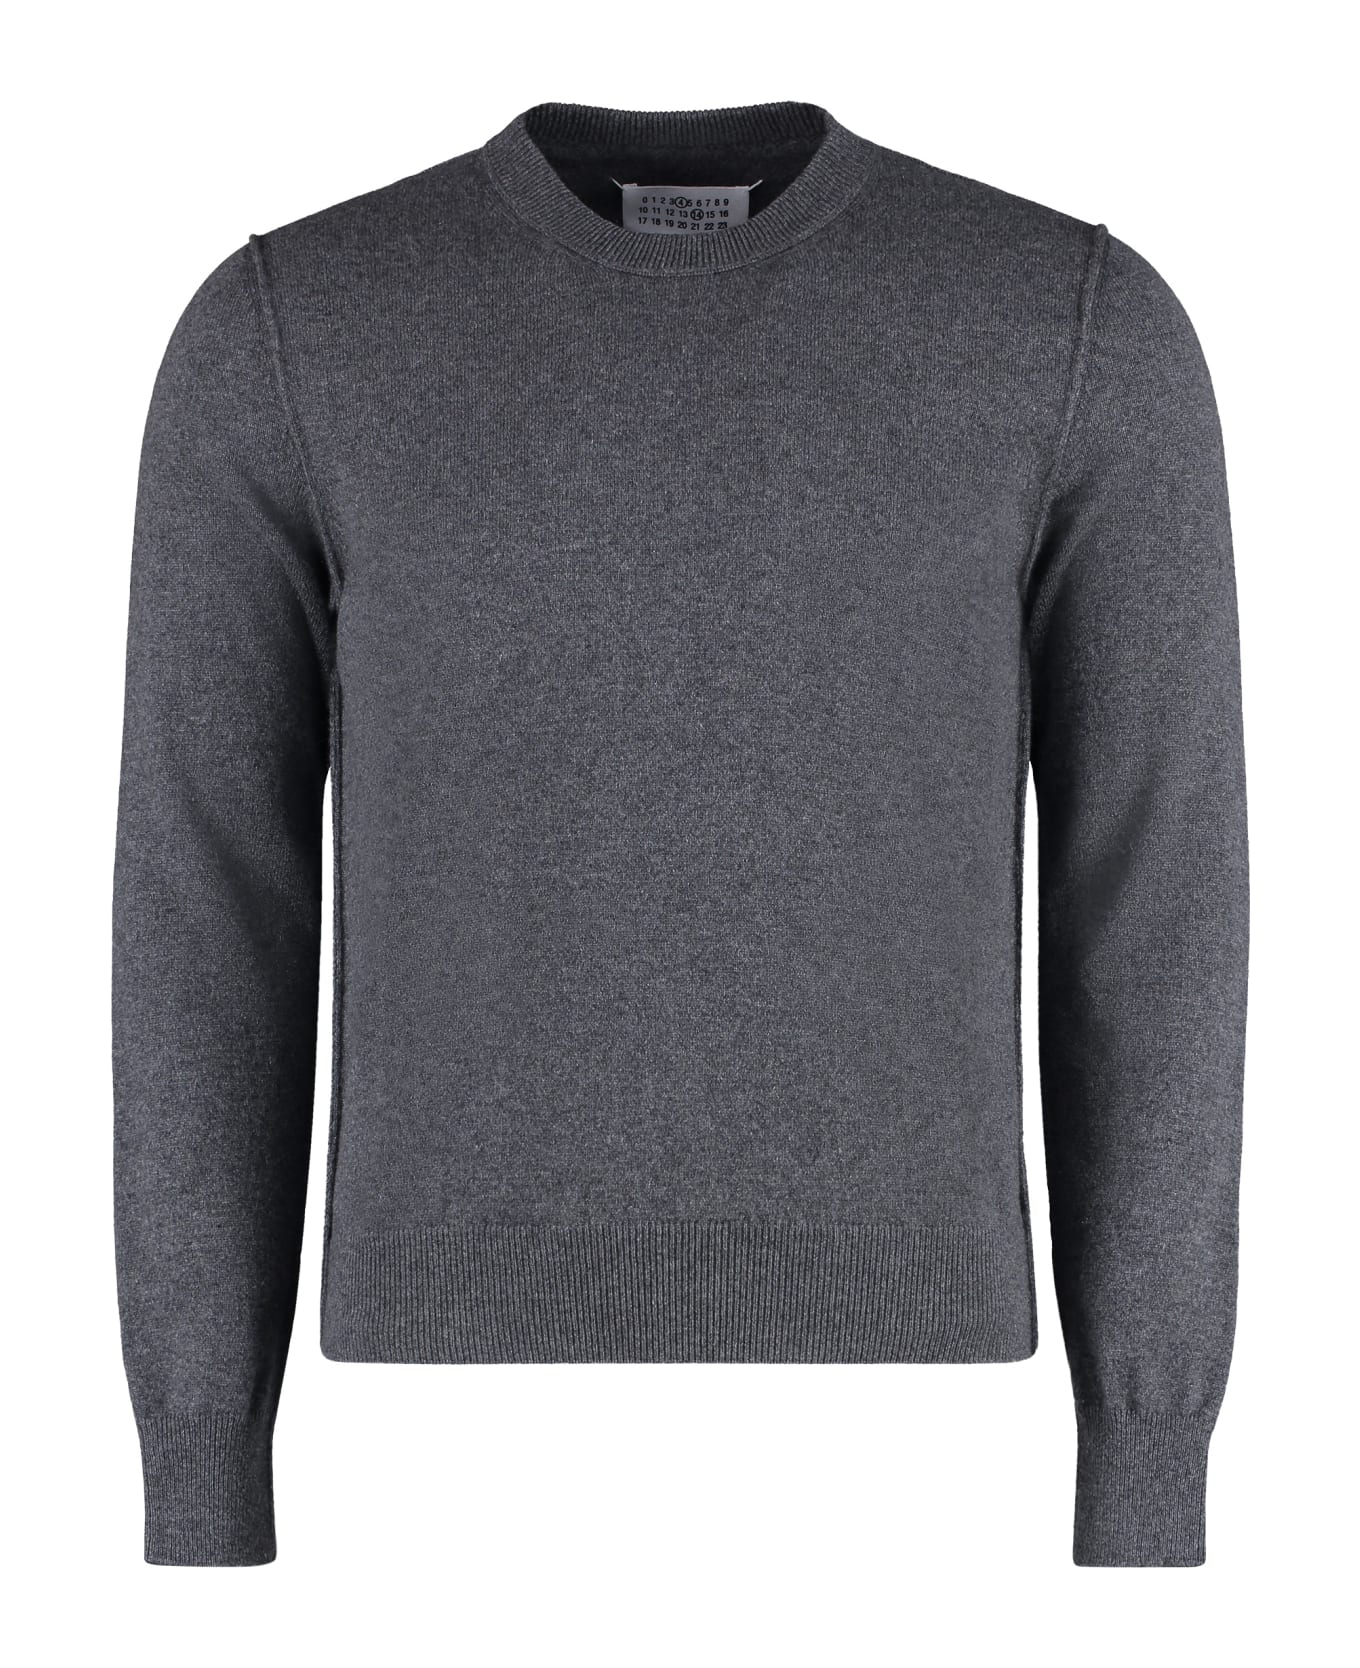 Maison Margiela Cashmere Sweater - grey